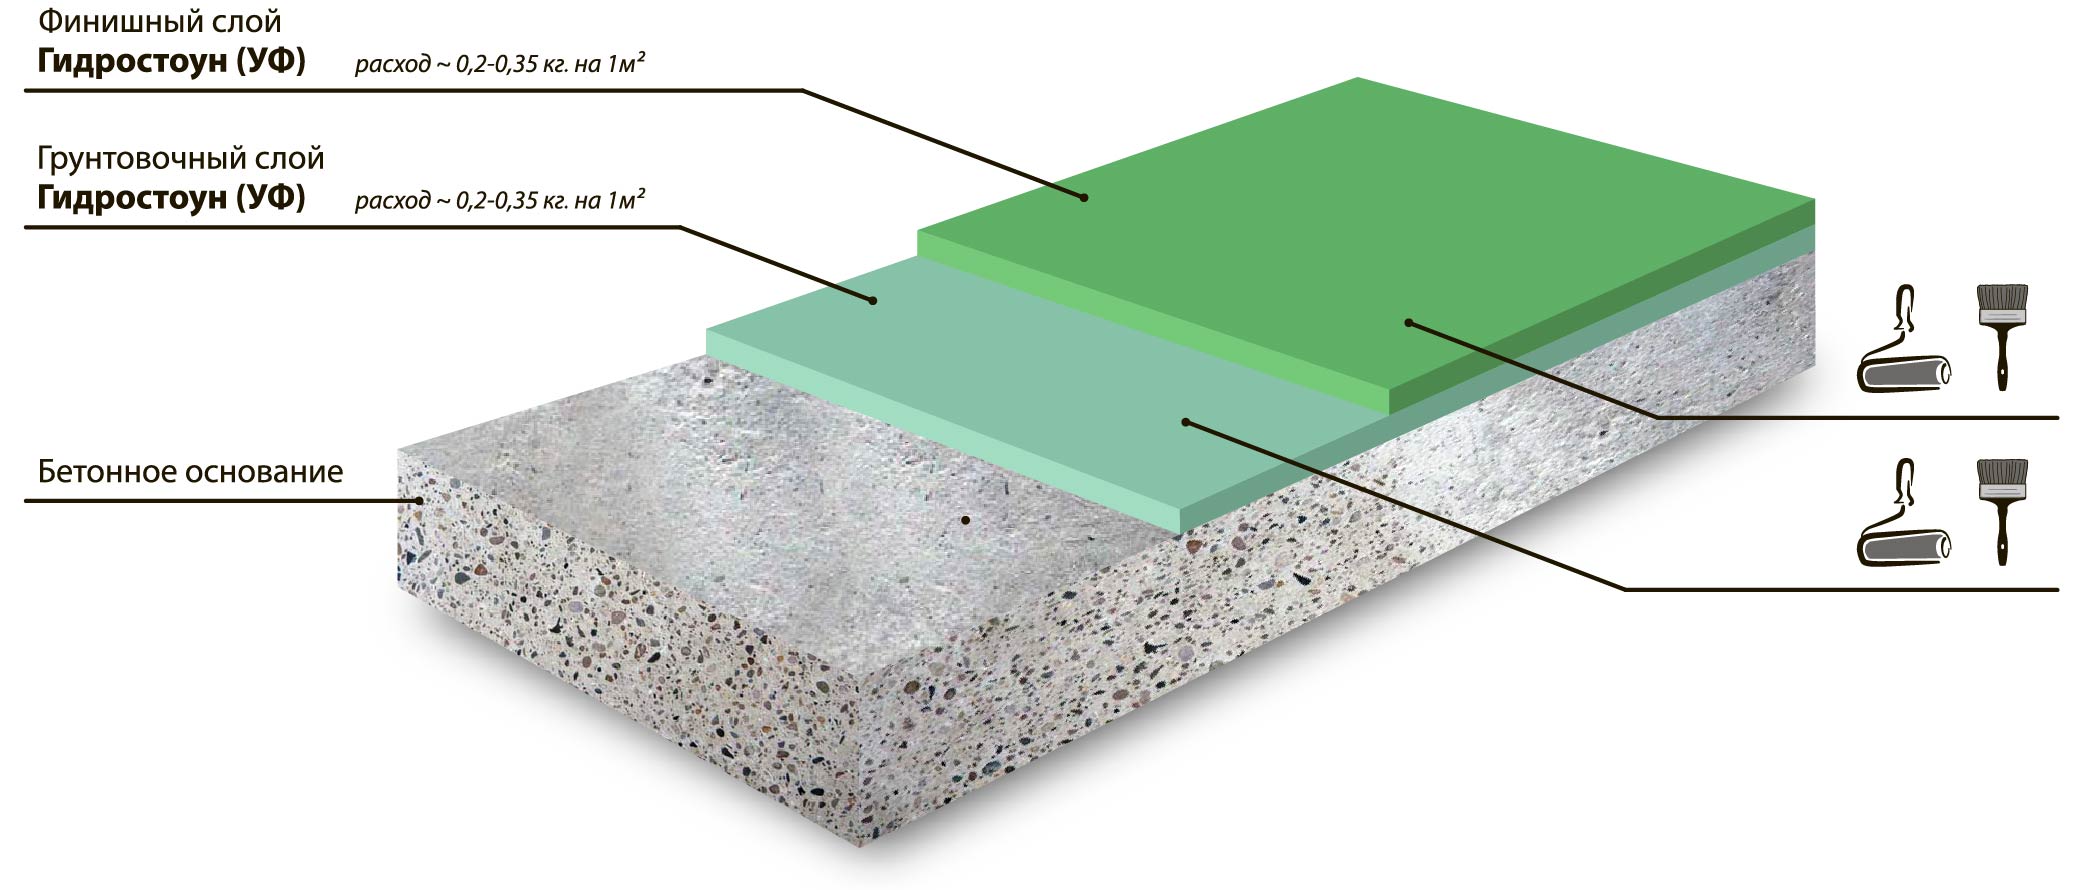 Двухкомпонентная полиуретановая система решения для окраски бетонных и металлических бассейнов